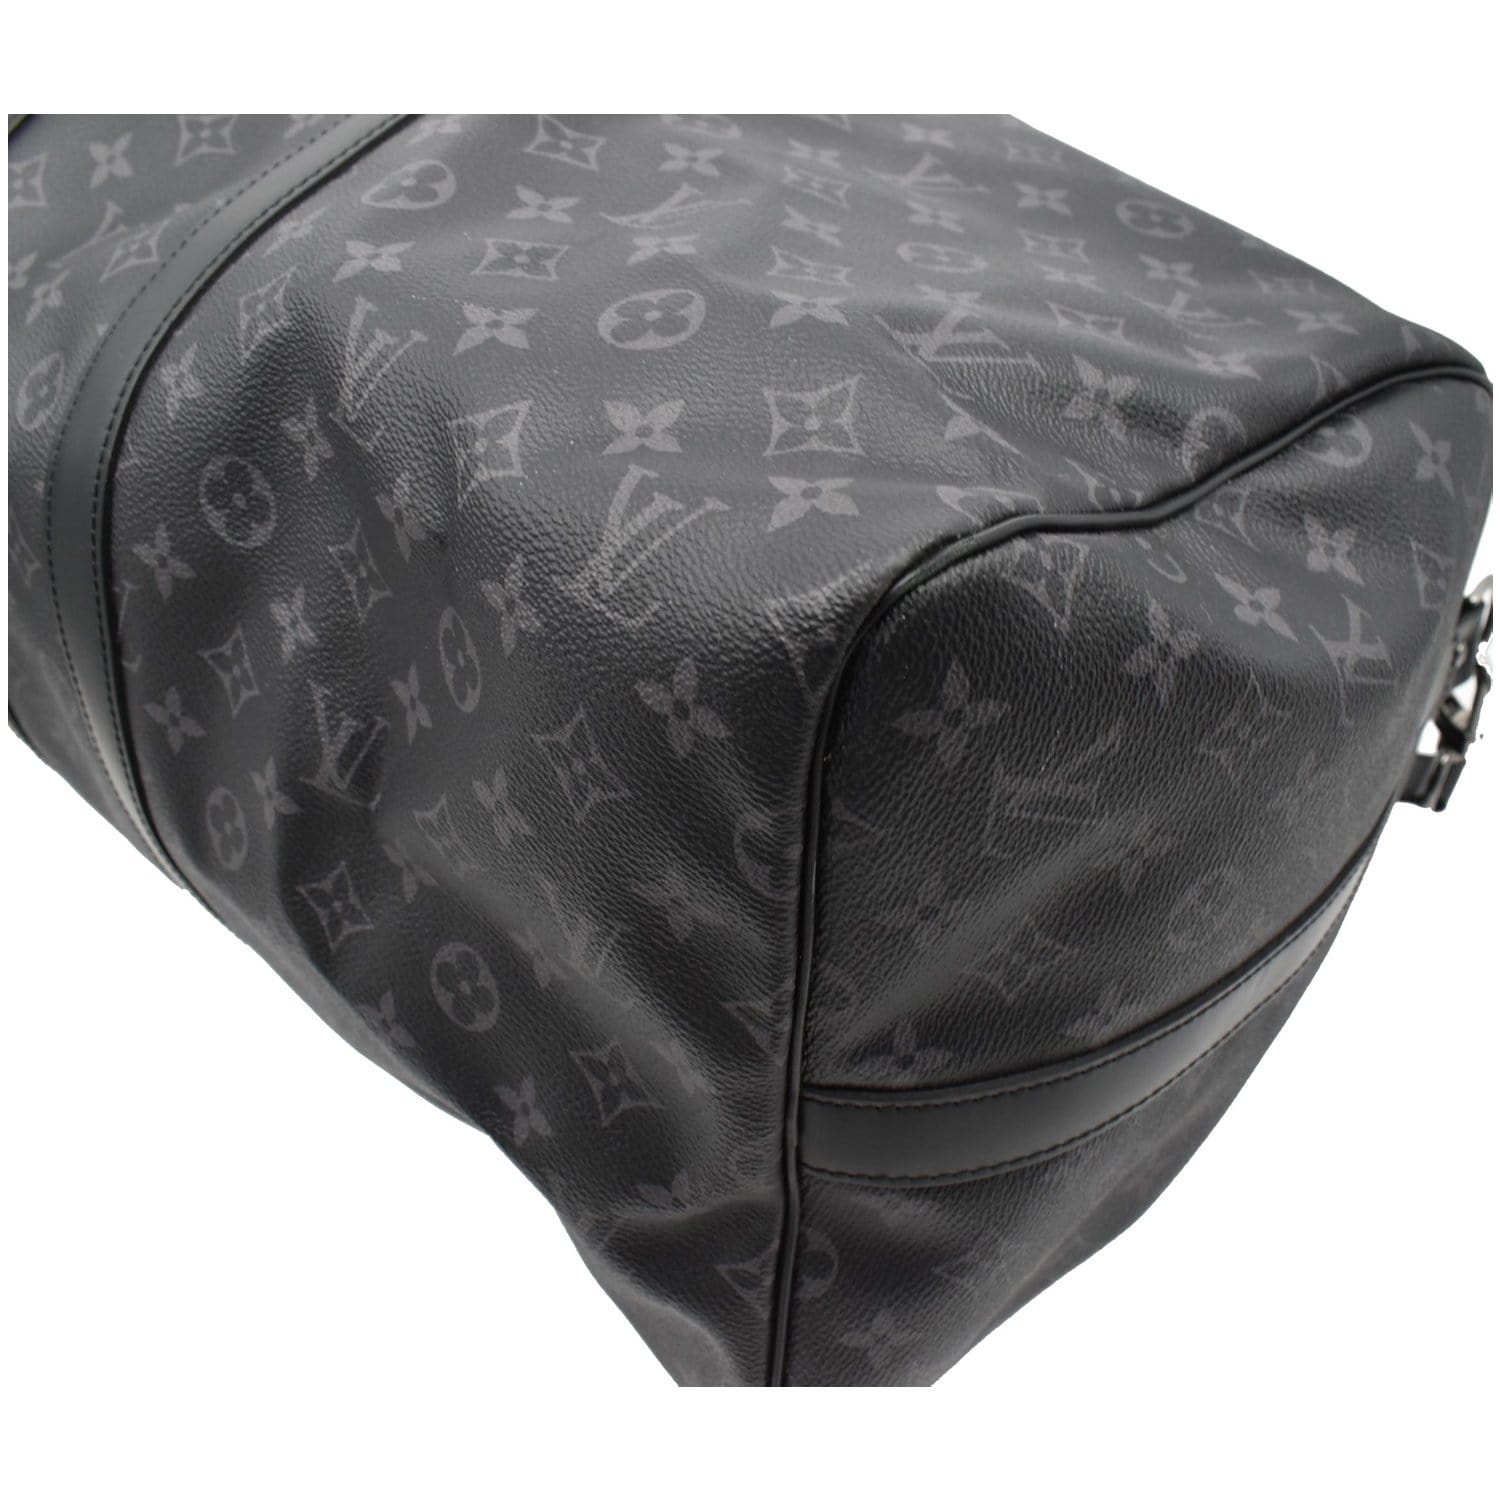 LOUIS VUITTON Monogram Eclipse Travel Bag silver buckle handle shoulder bag  black